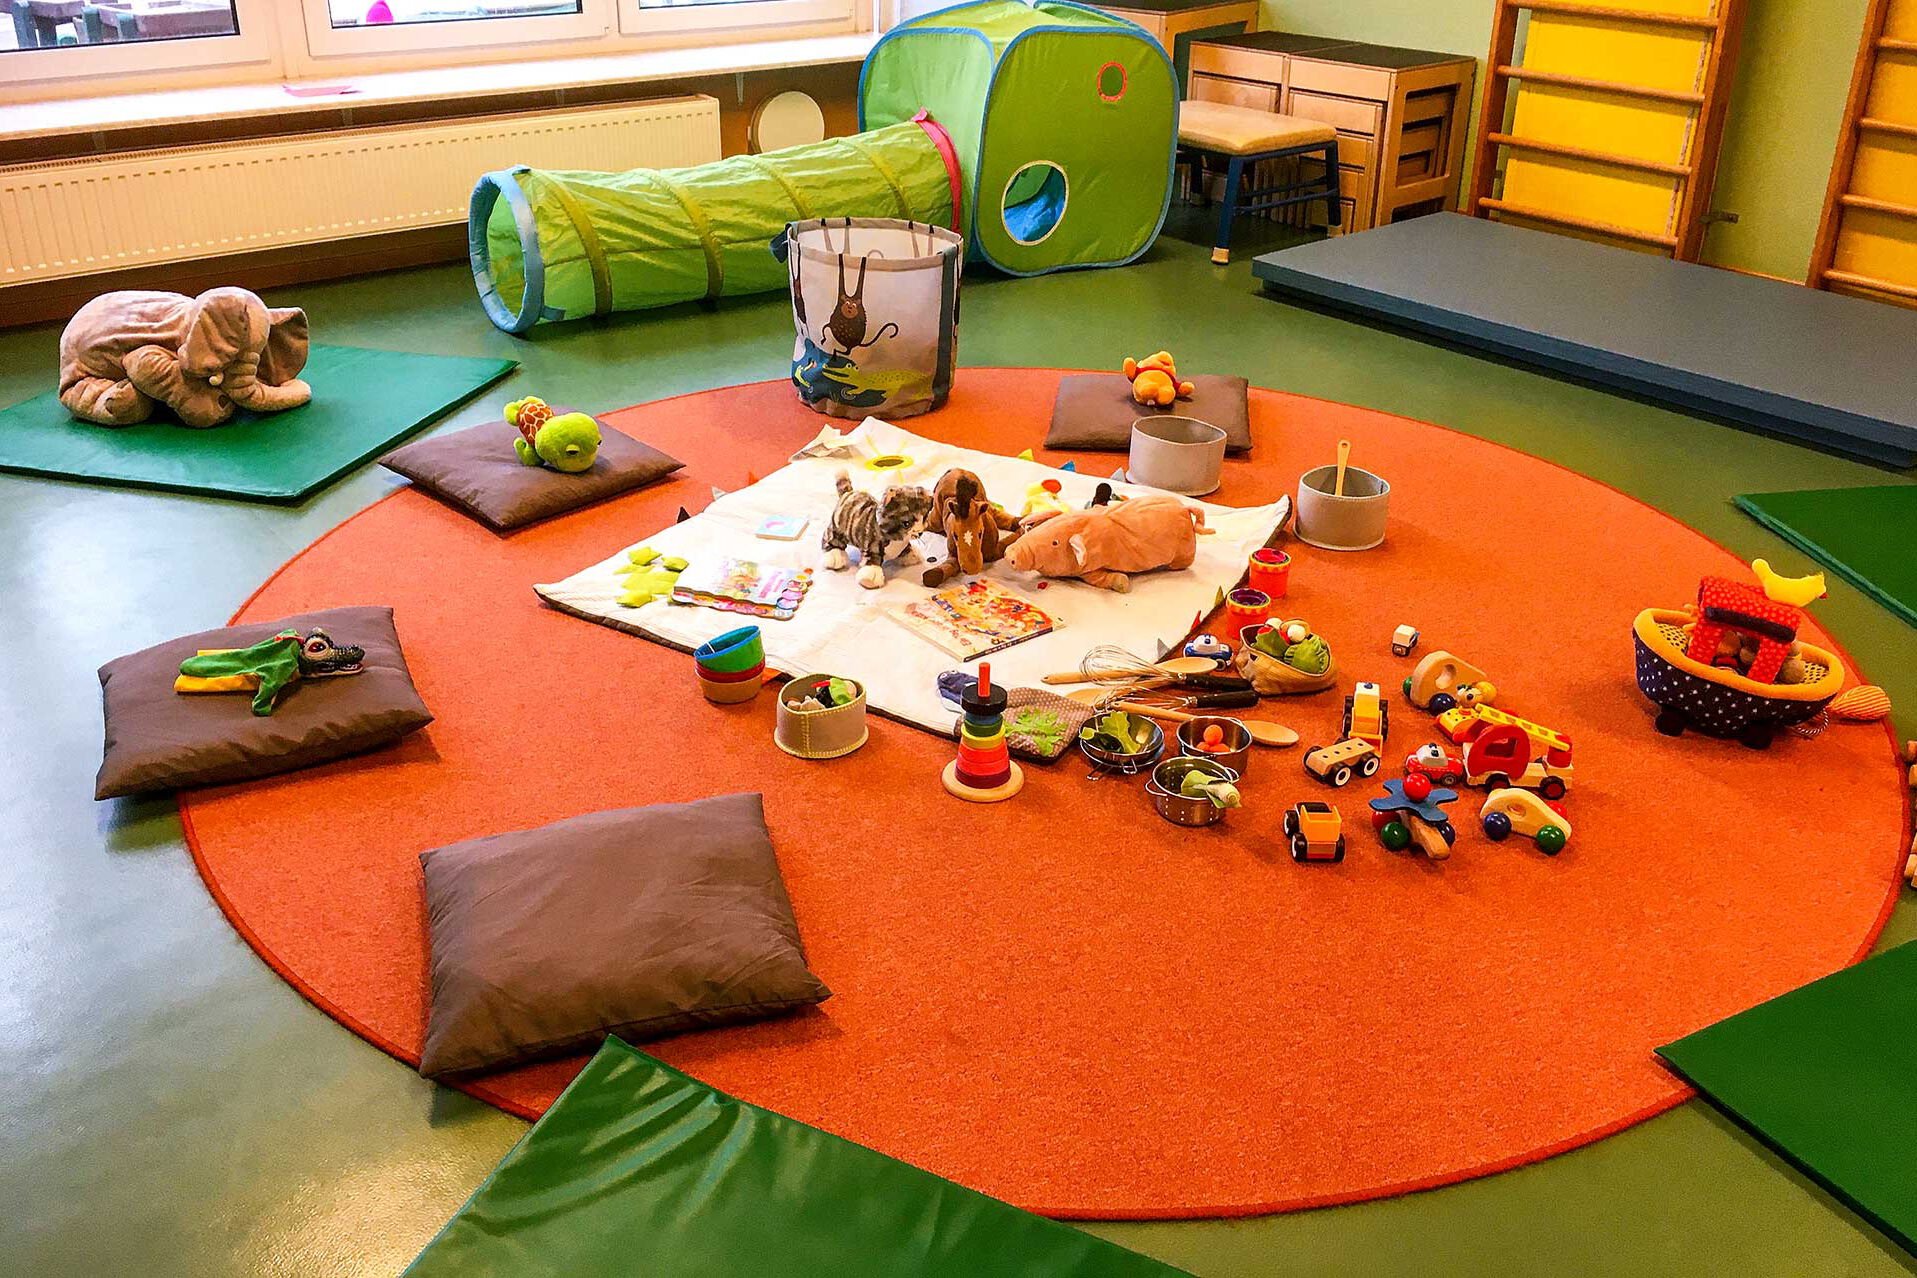 Zur Spielstunde sind auf dem Fußboden im Spielzimmer Decken und Matten mit viel Spielzeug ausgebreitet.